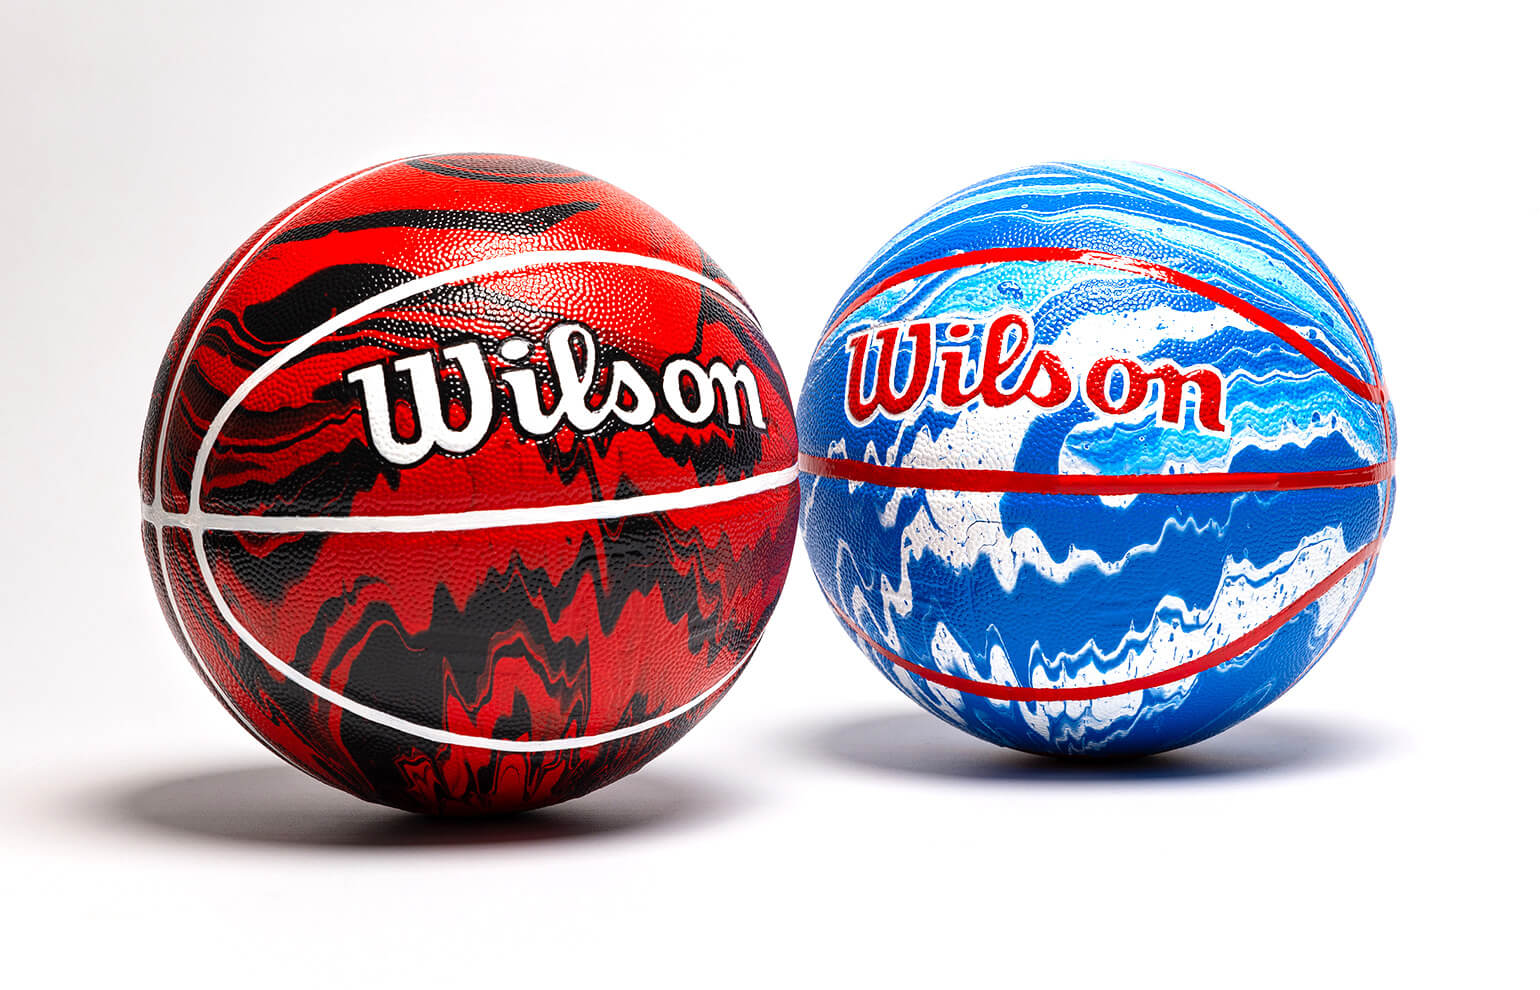 Wilson x NBA - Fusion Basketball Artworks